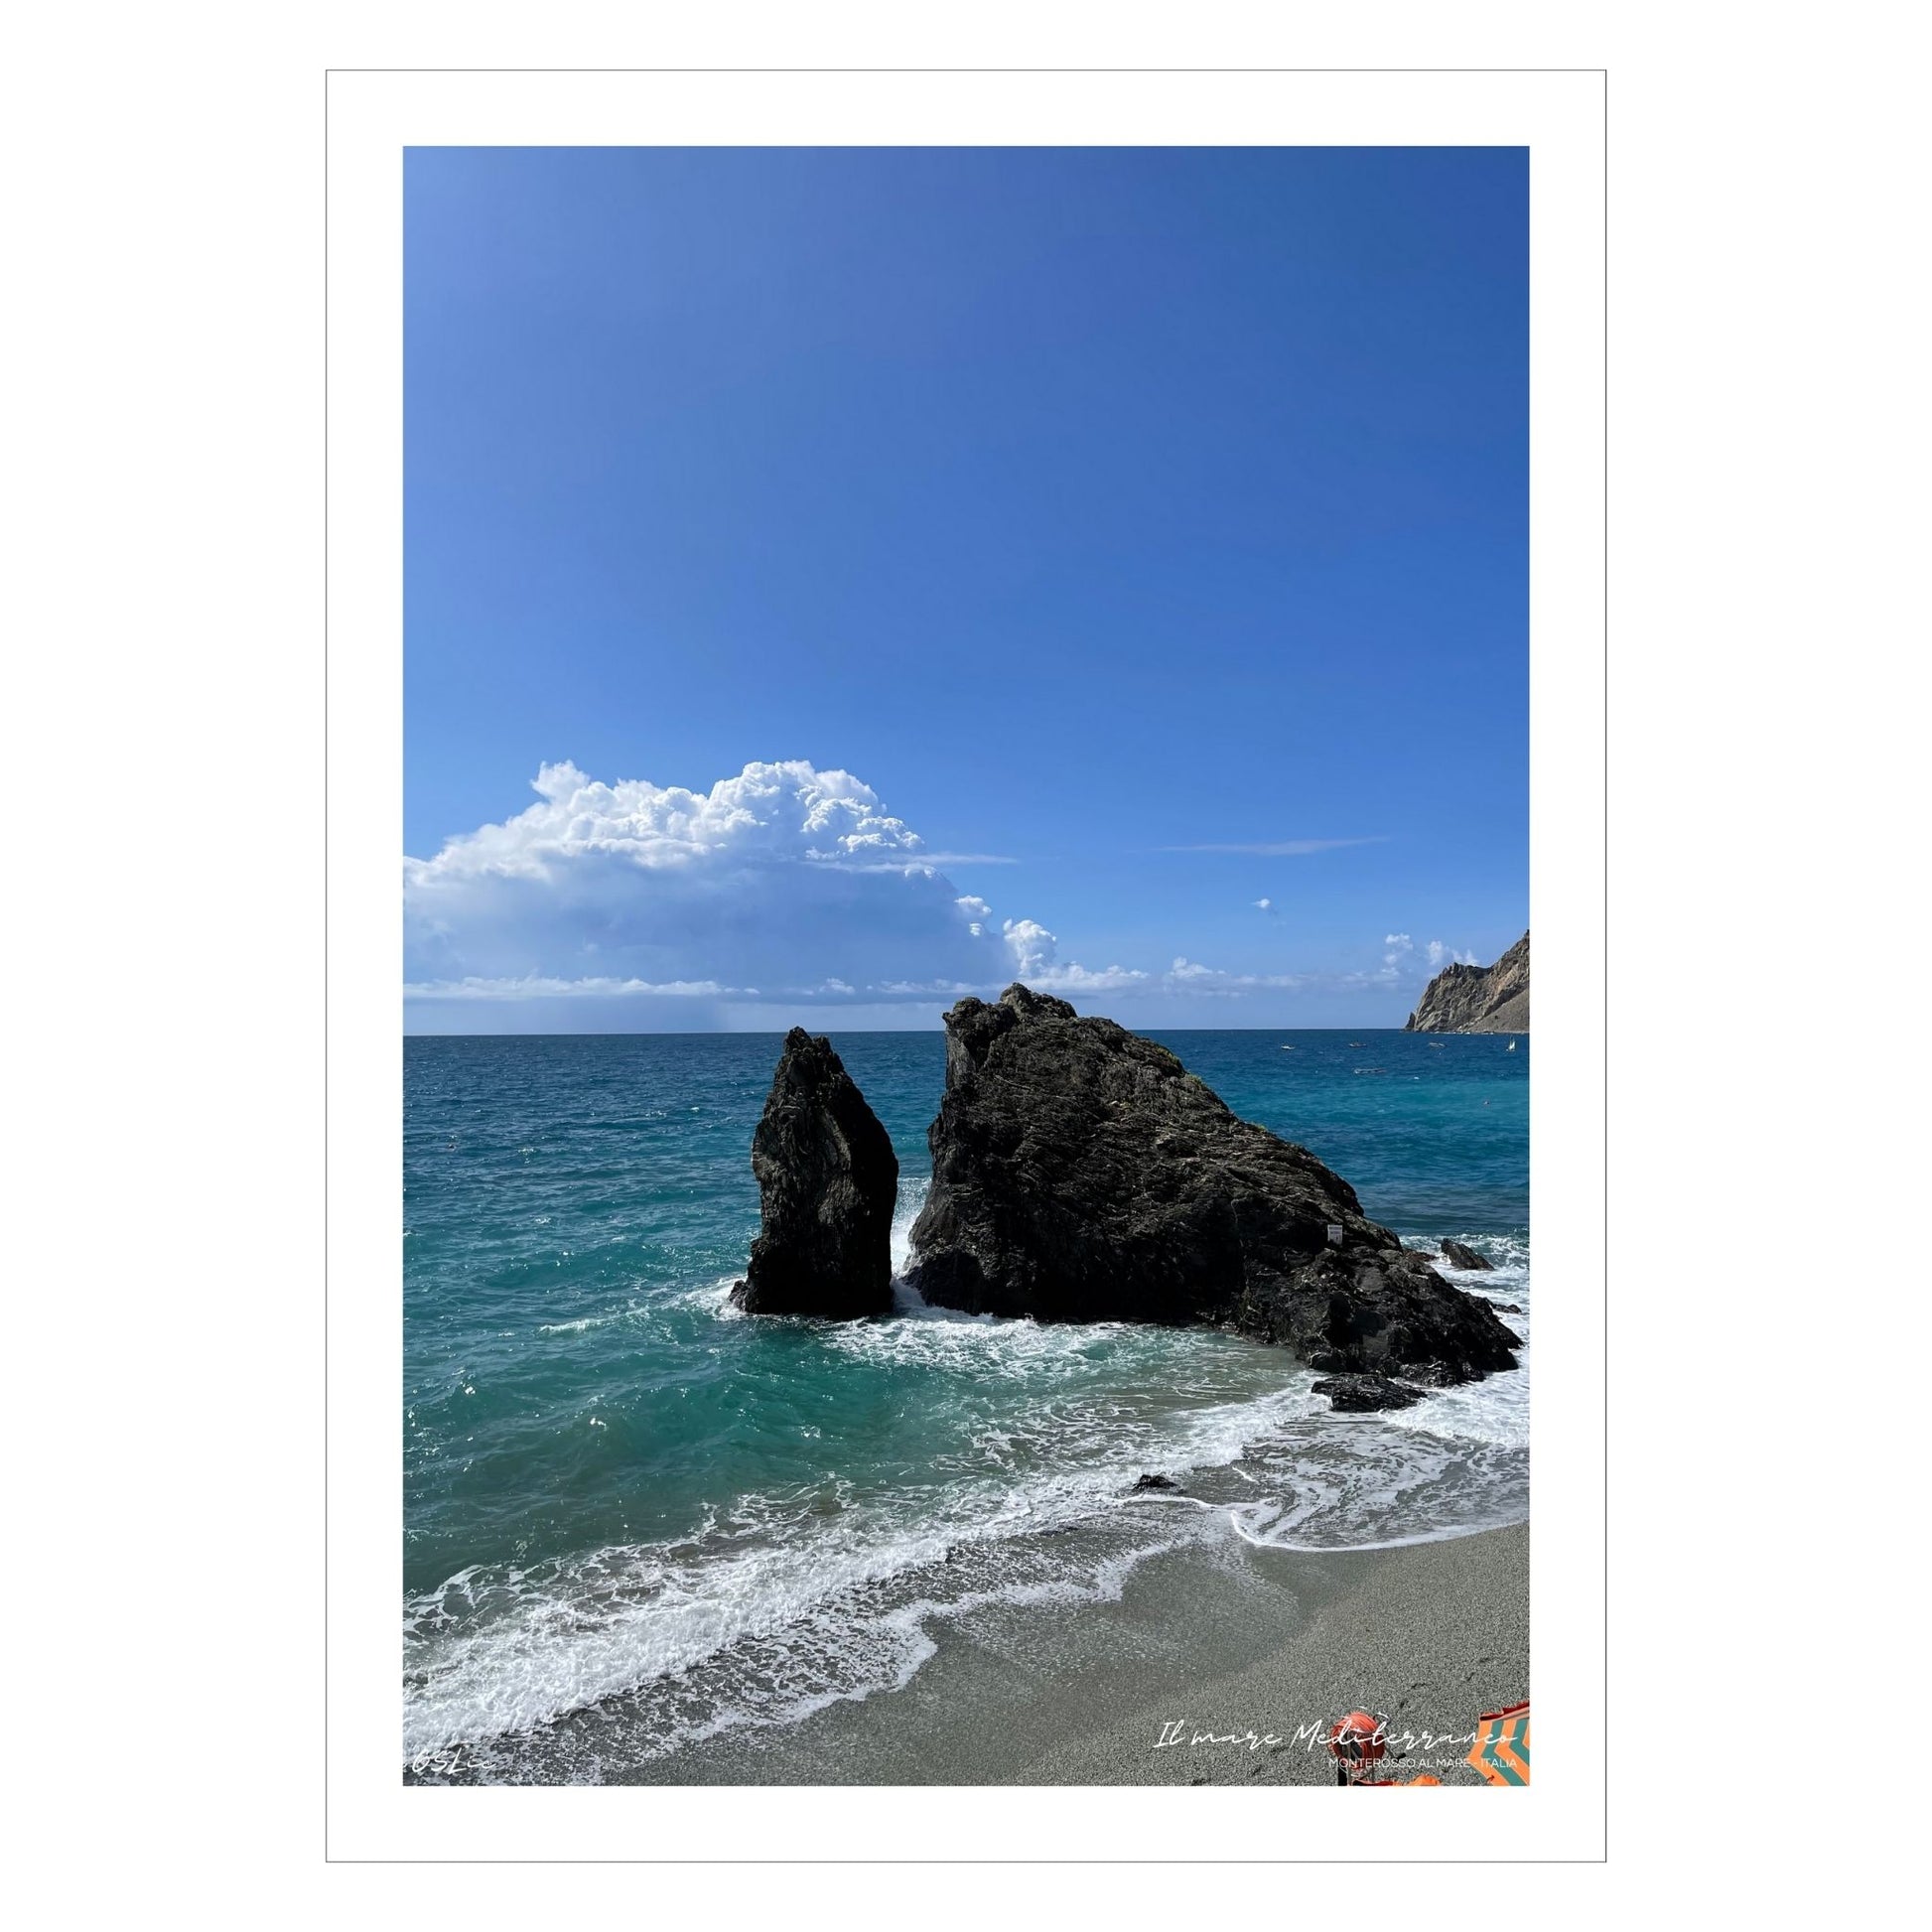 Motiv fra stranden ved Montereosso al Mare, en av de fem byene i Cinque Terre ved Liguriakysten i Italia. Bildet viser blått middelhav og himmel som møter havet i horisonten. . I overgangen mellom himmel og hav ligger en stor skybanke. Det slår små bølger inn mot den karakteristiske klippen som ligger midt på stranden 